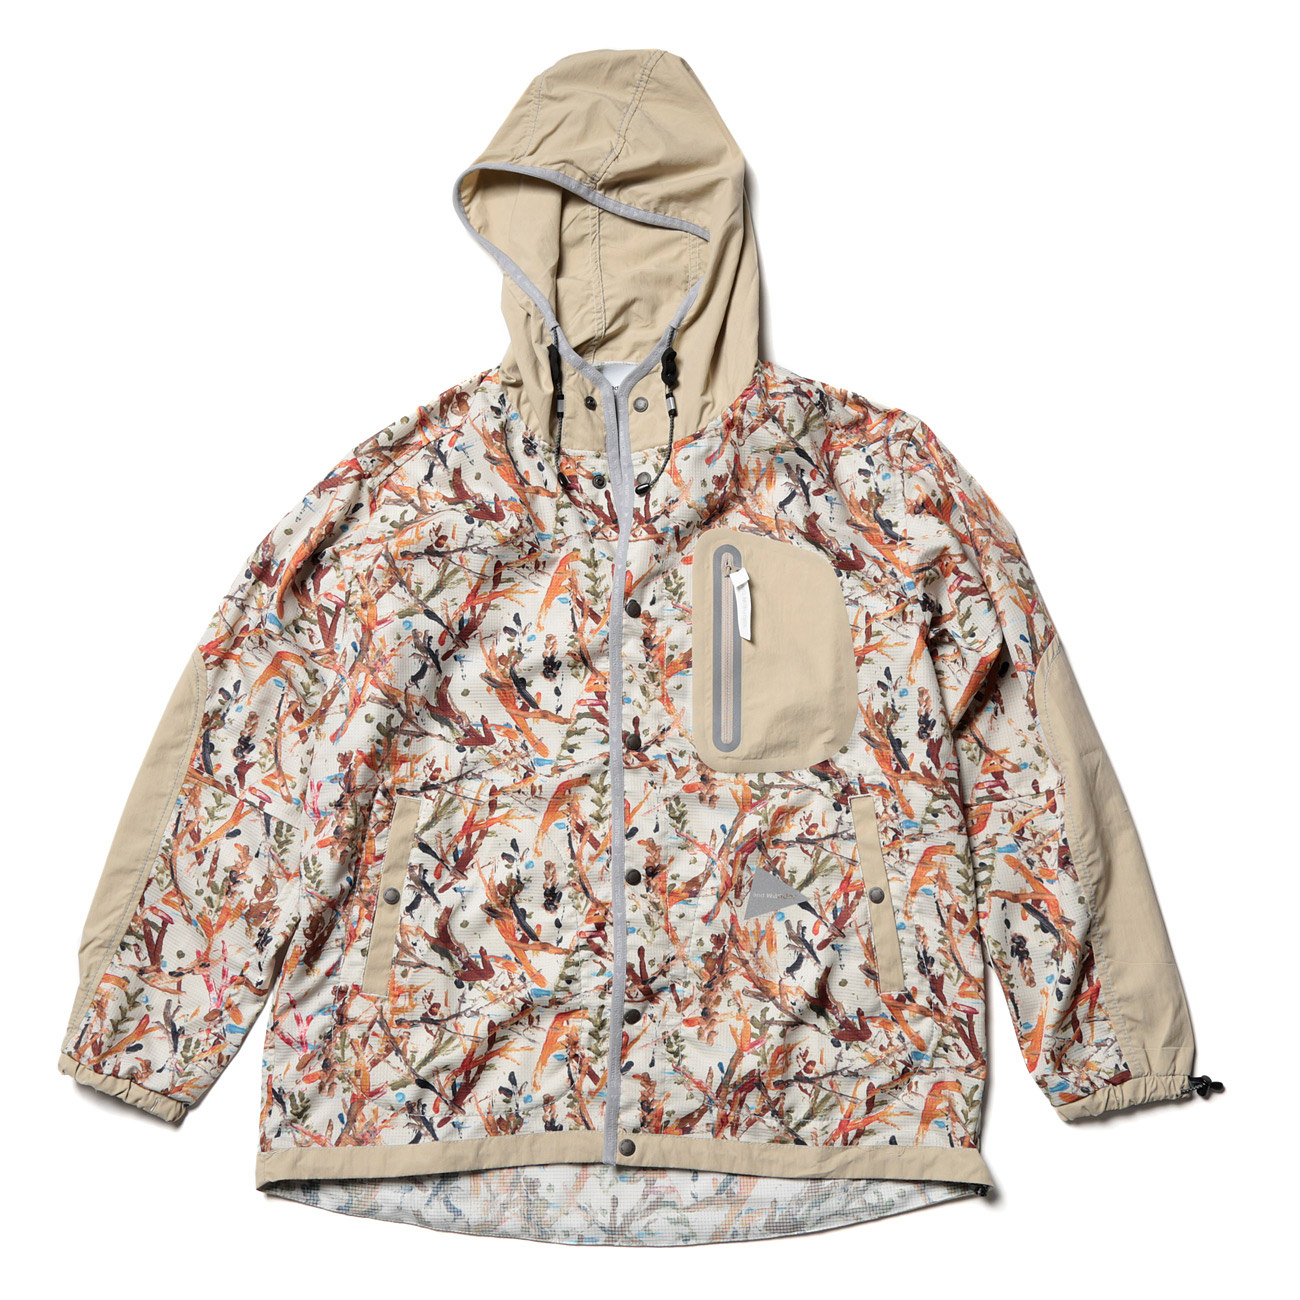 13,500円and wander vent hoodie gray womens M